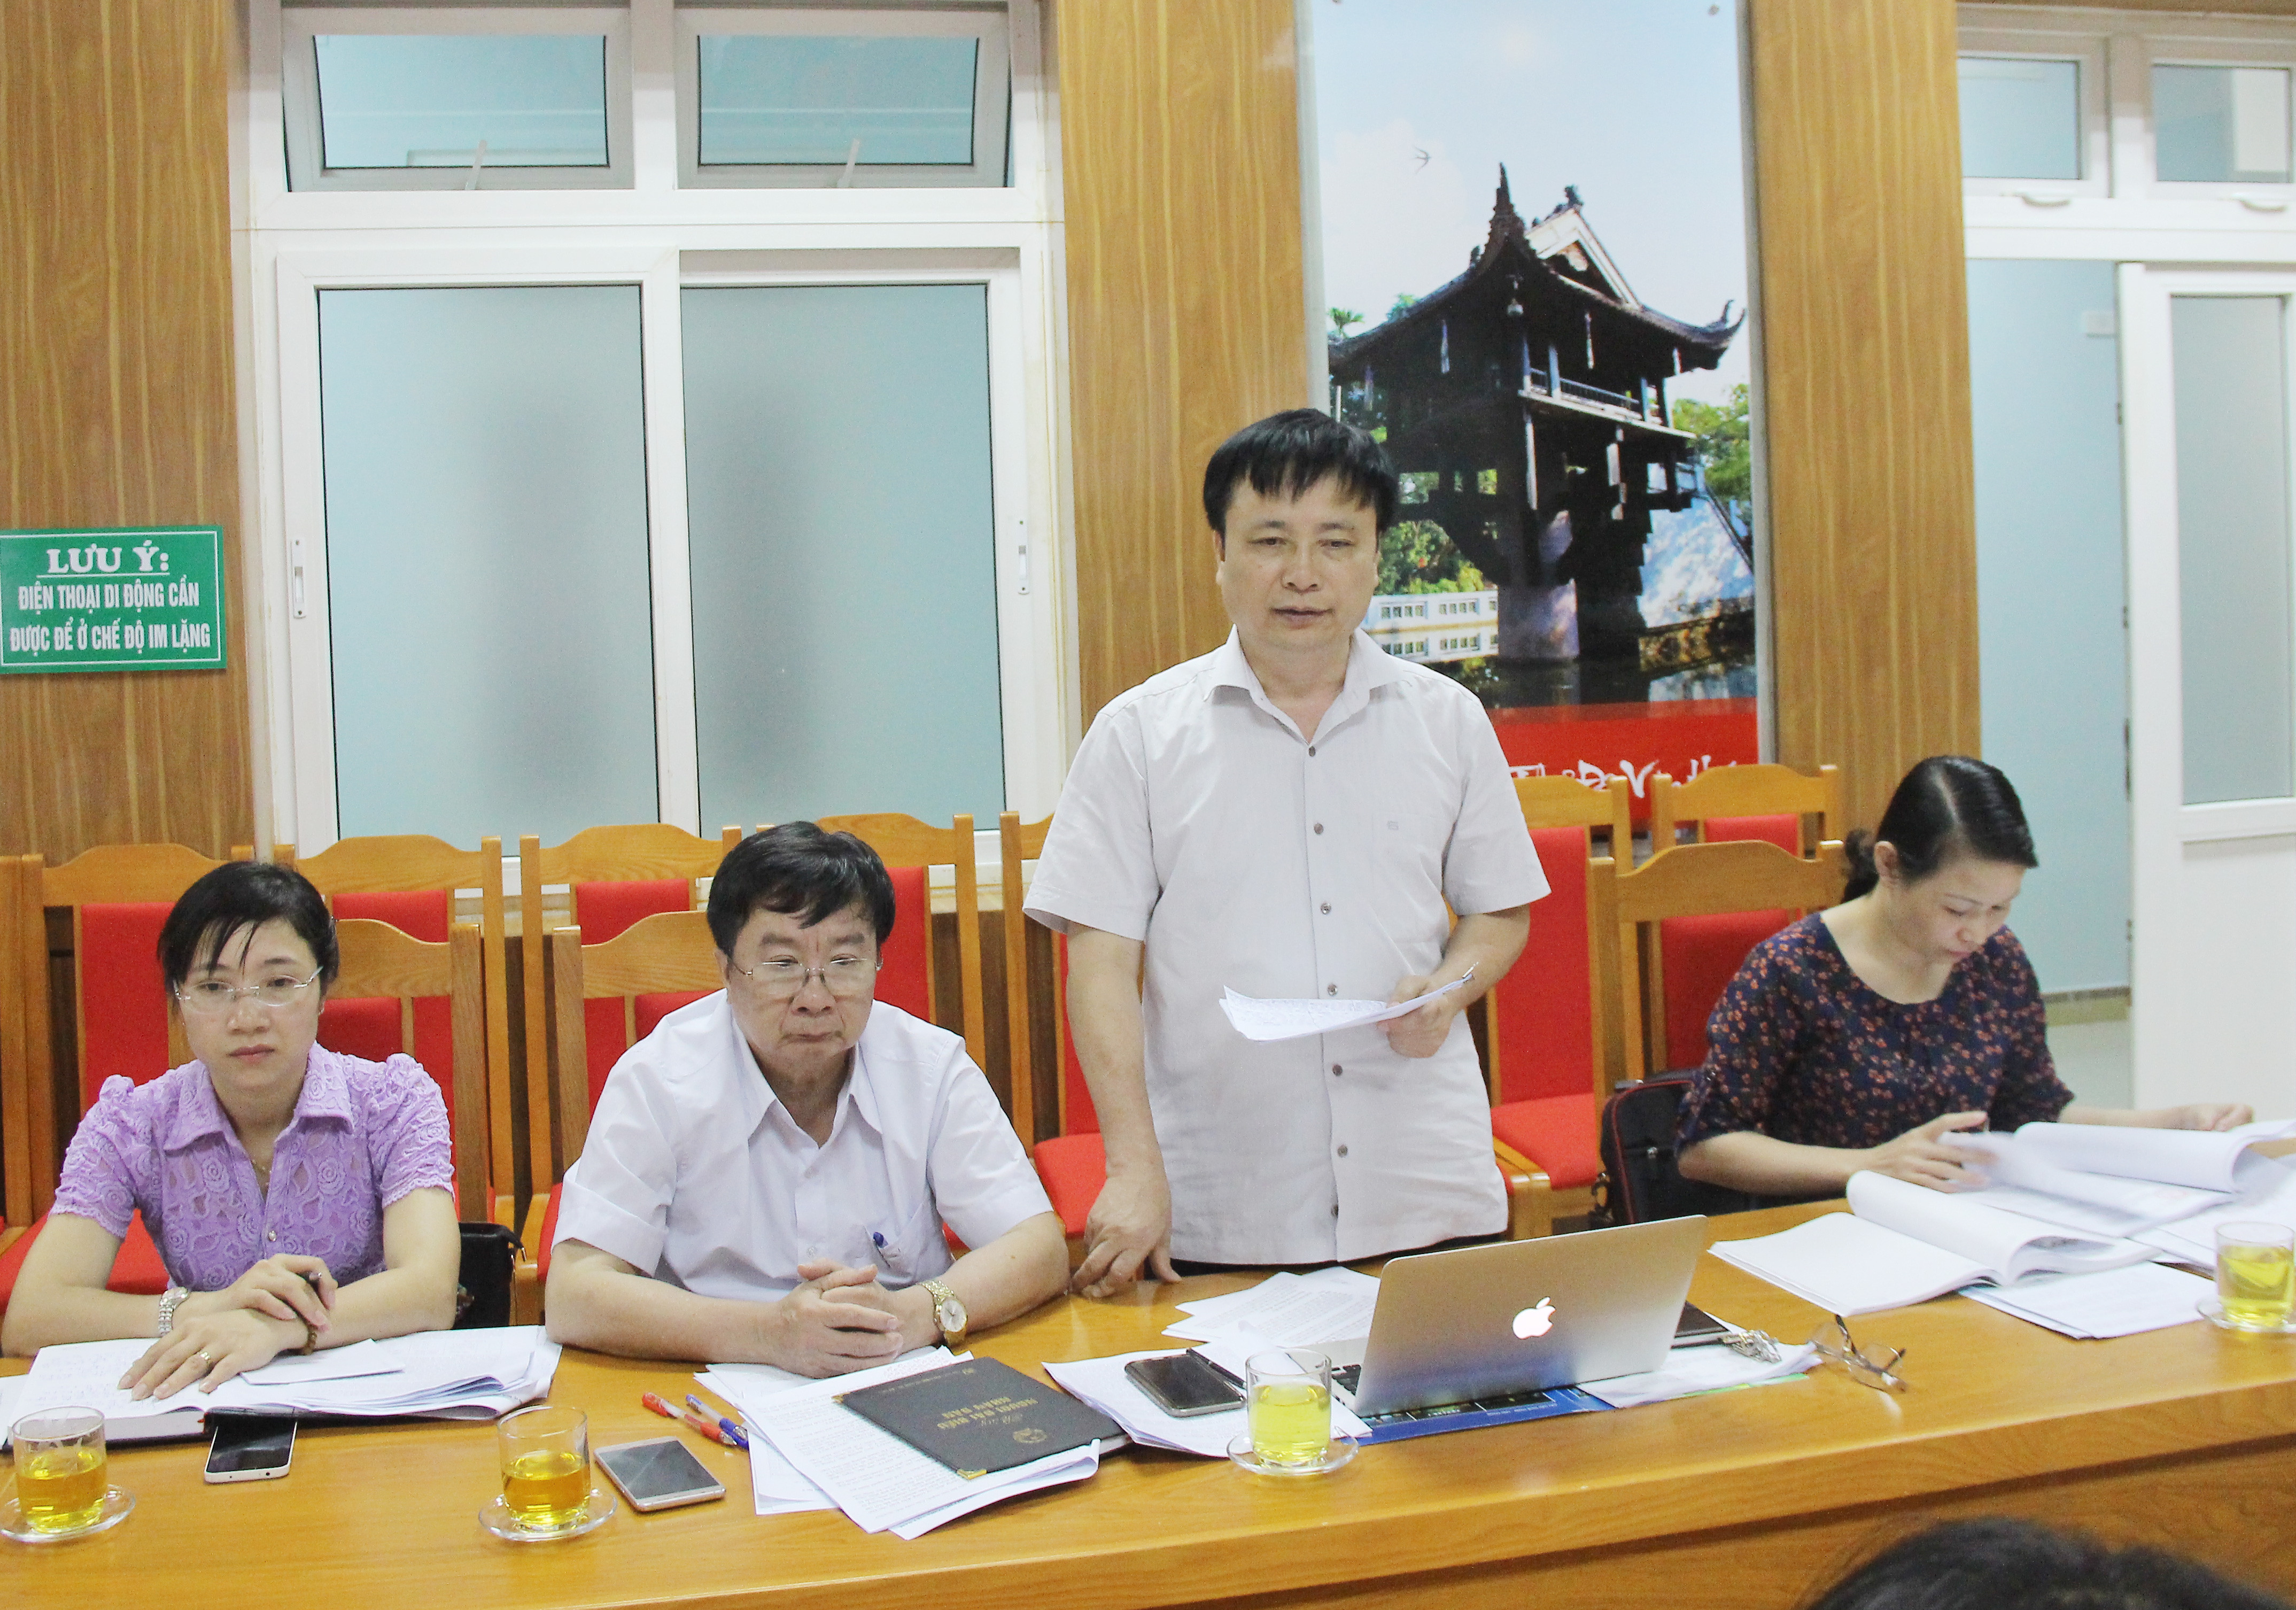 Ông Bùi Đình Long - Bí thư Huyện ủy Nam Đàn, thành viên đoàn giám sát đề nghị bệnh viên làm rõ nguyên nhân nợ